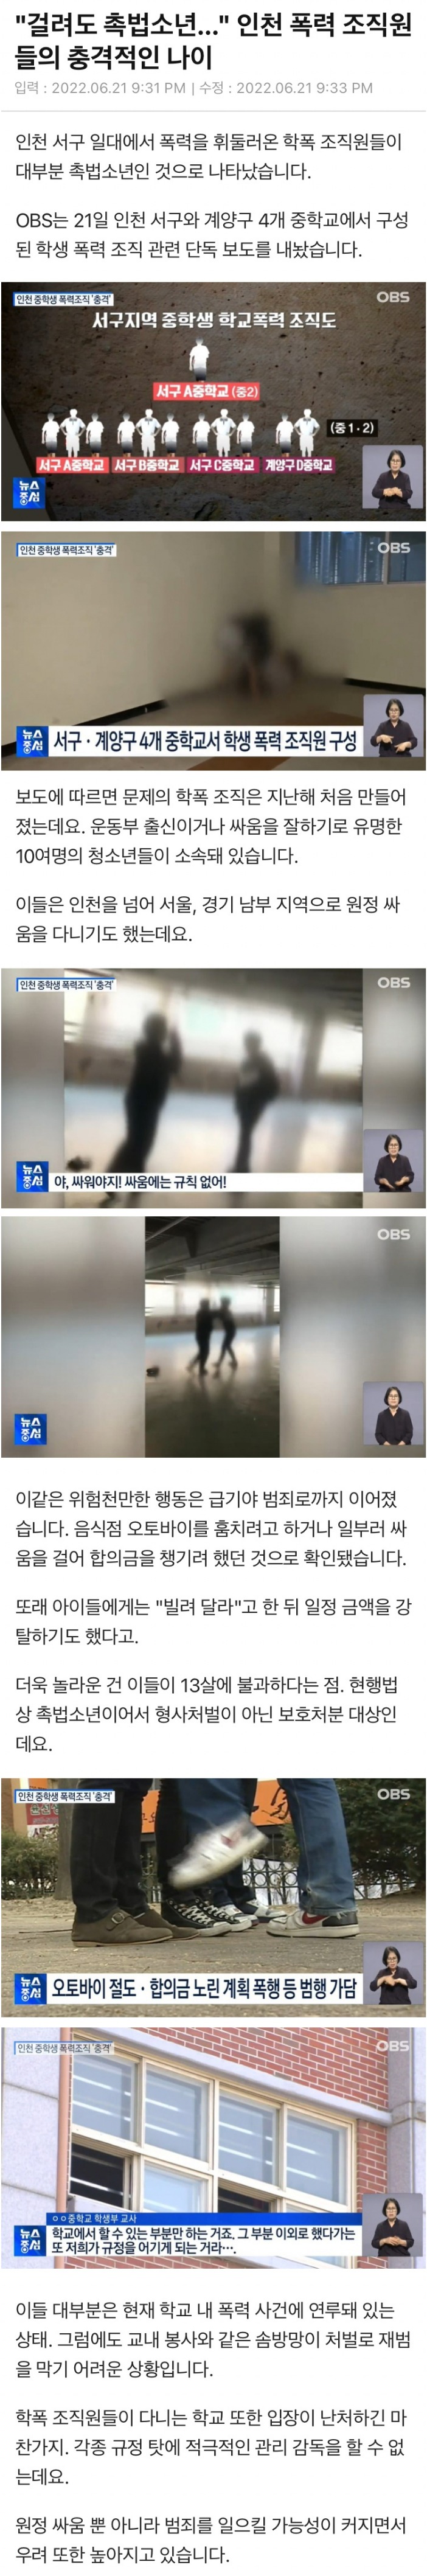 인천 폭력 조직원들의 충격적인 나이